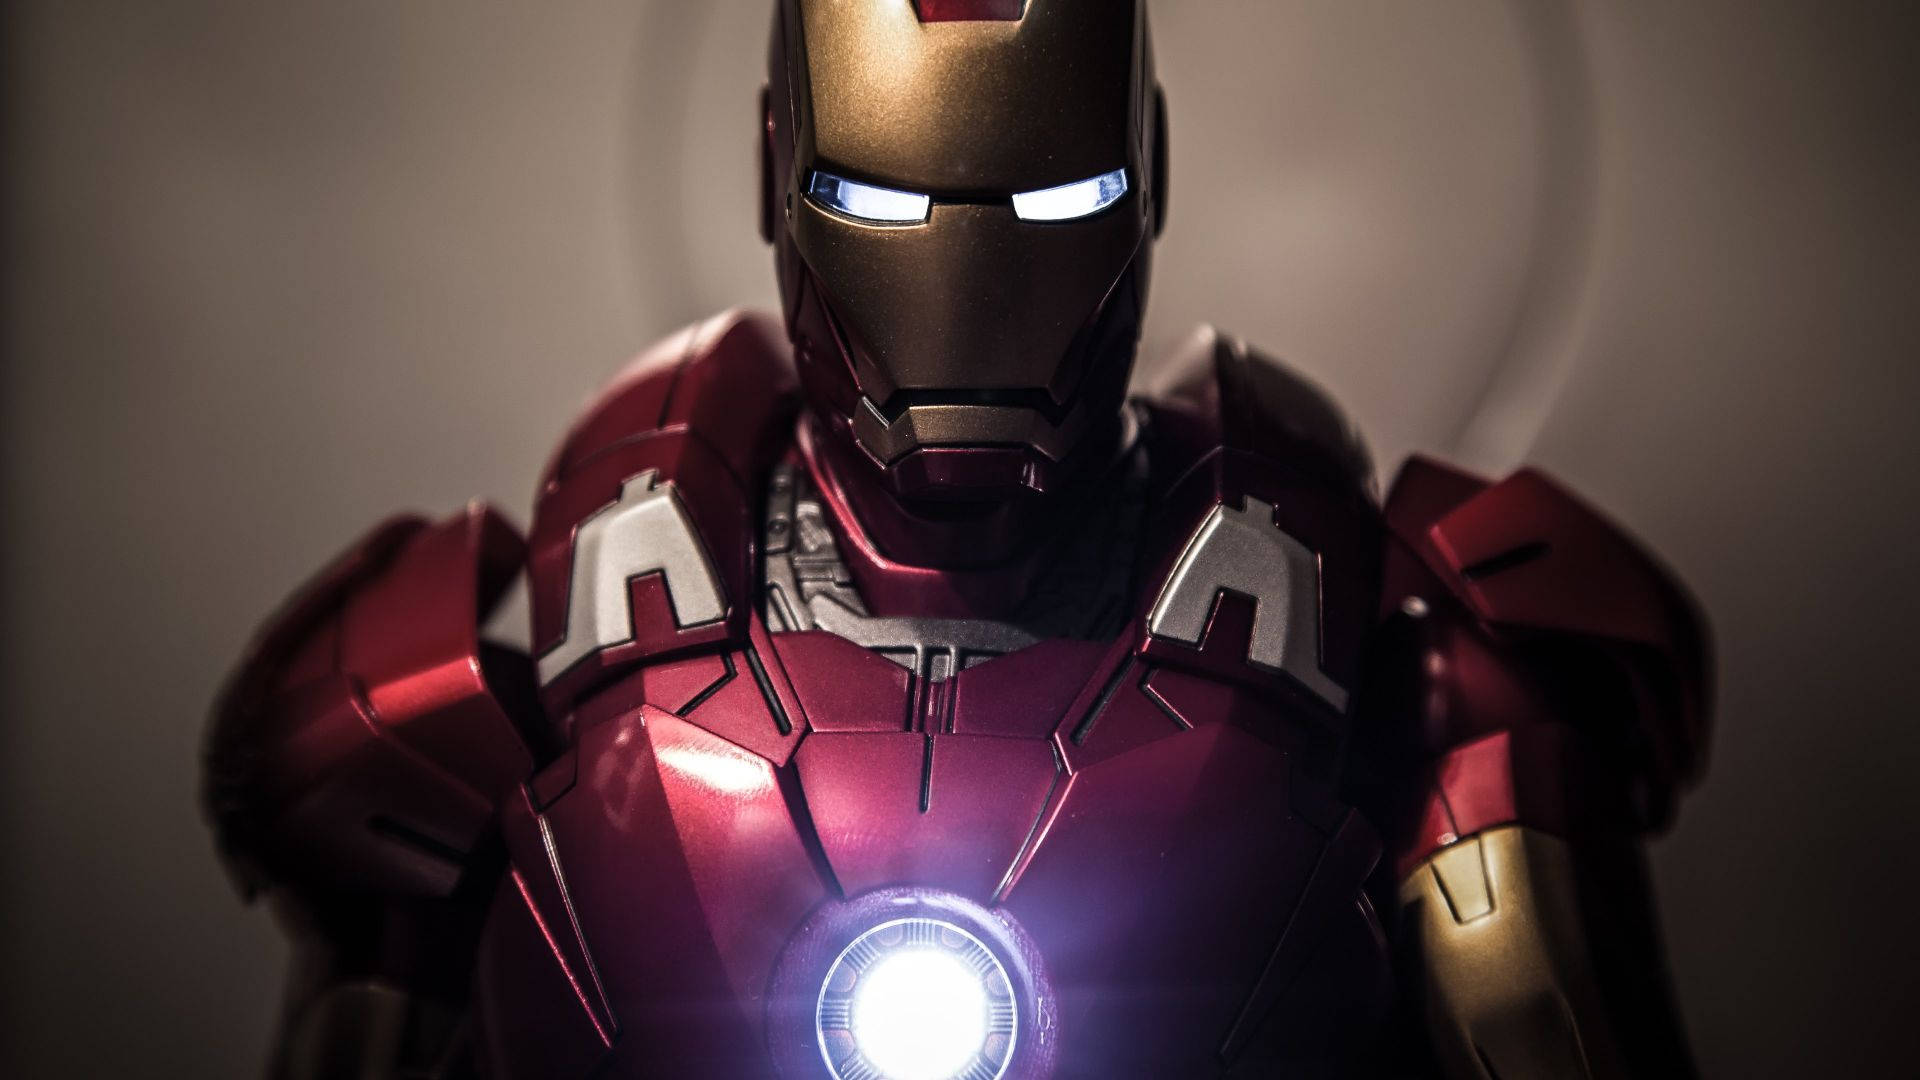 Download Iron Man Superhero Glowing Arc Reactor Wallpaper 